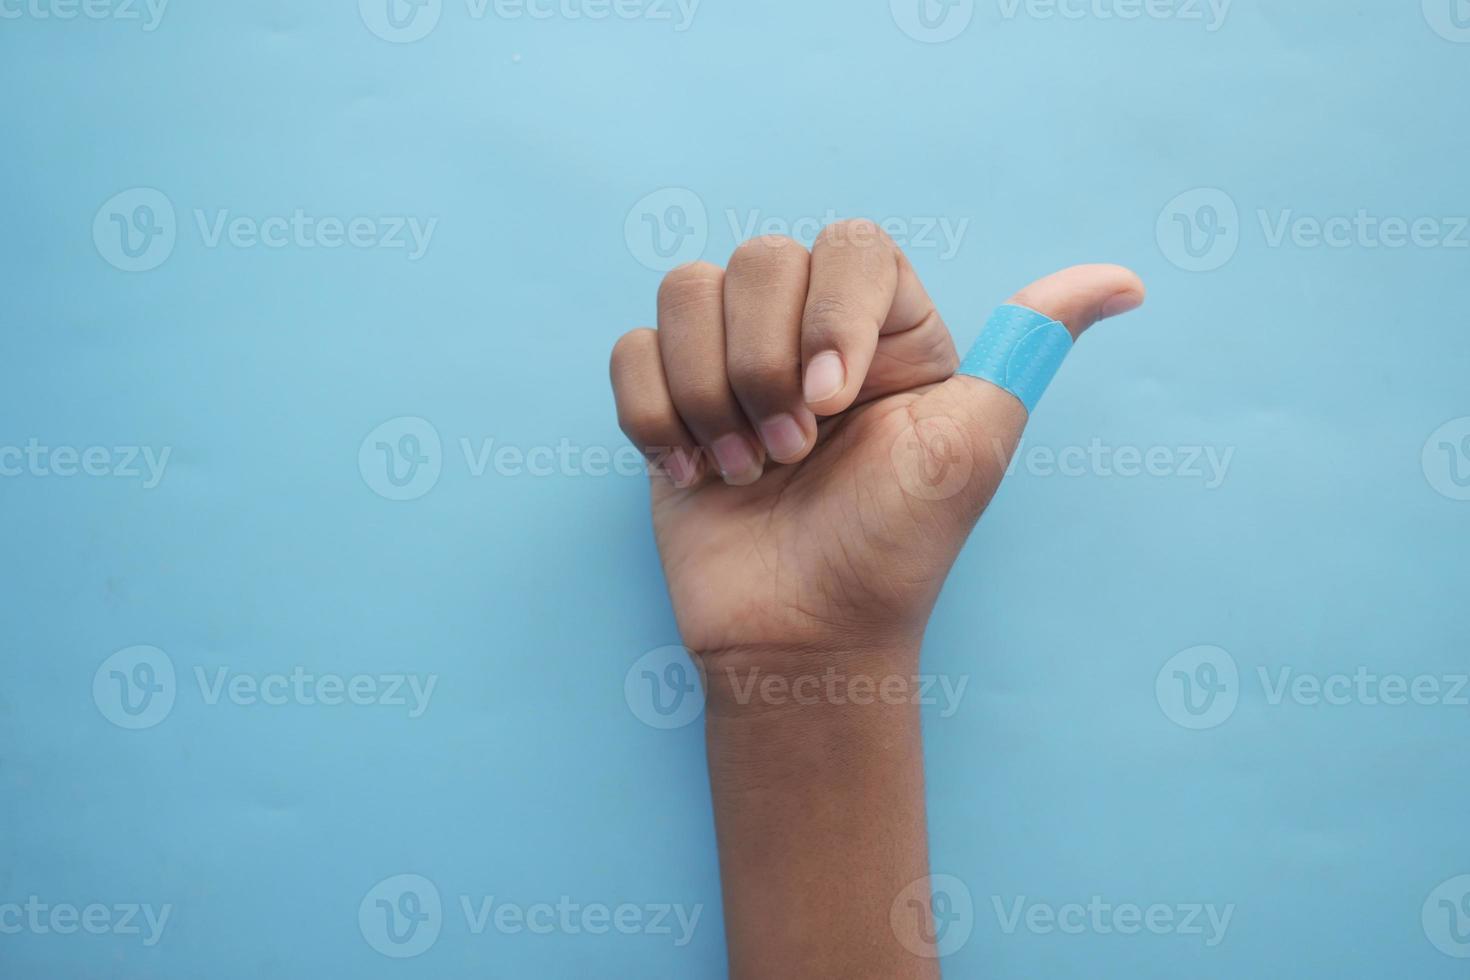 pansement adhésif de couleur bleue à portée de main photo